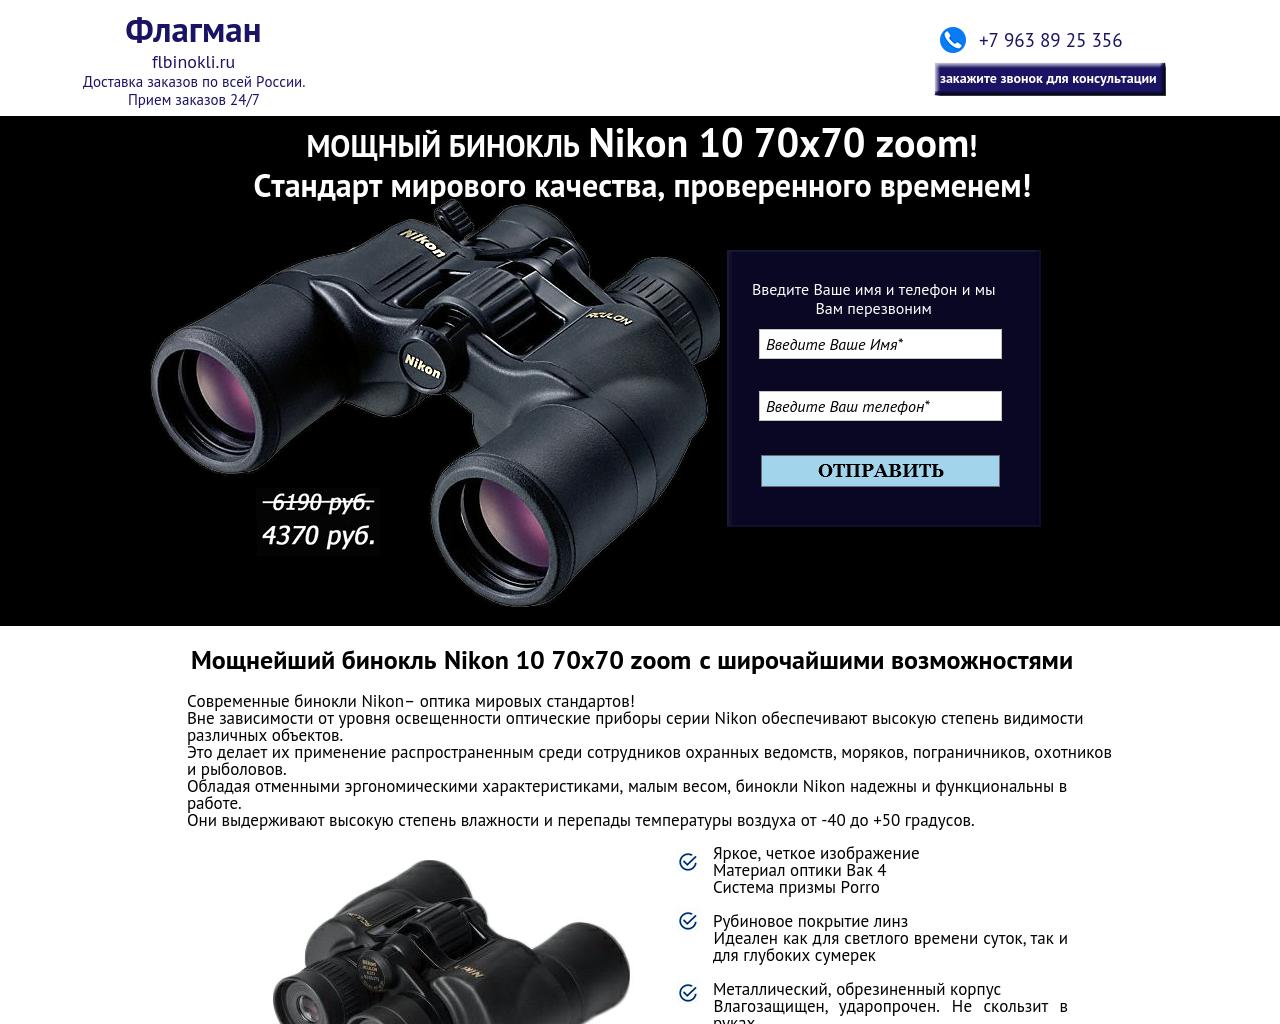 Изображение сайта flbinokli.ru в разрешении 1280x1024